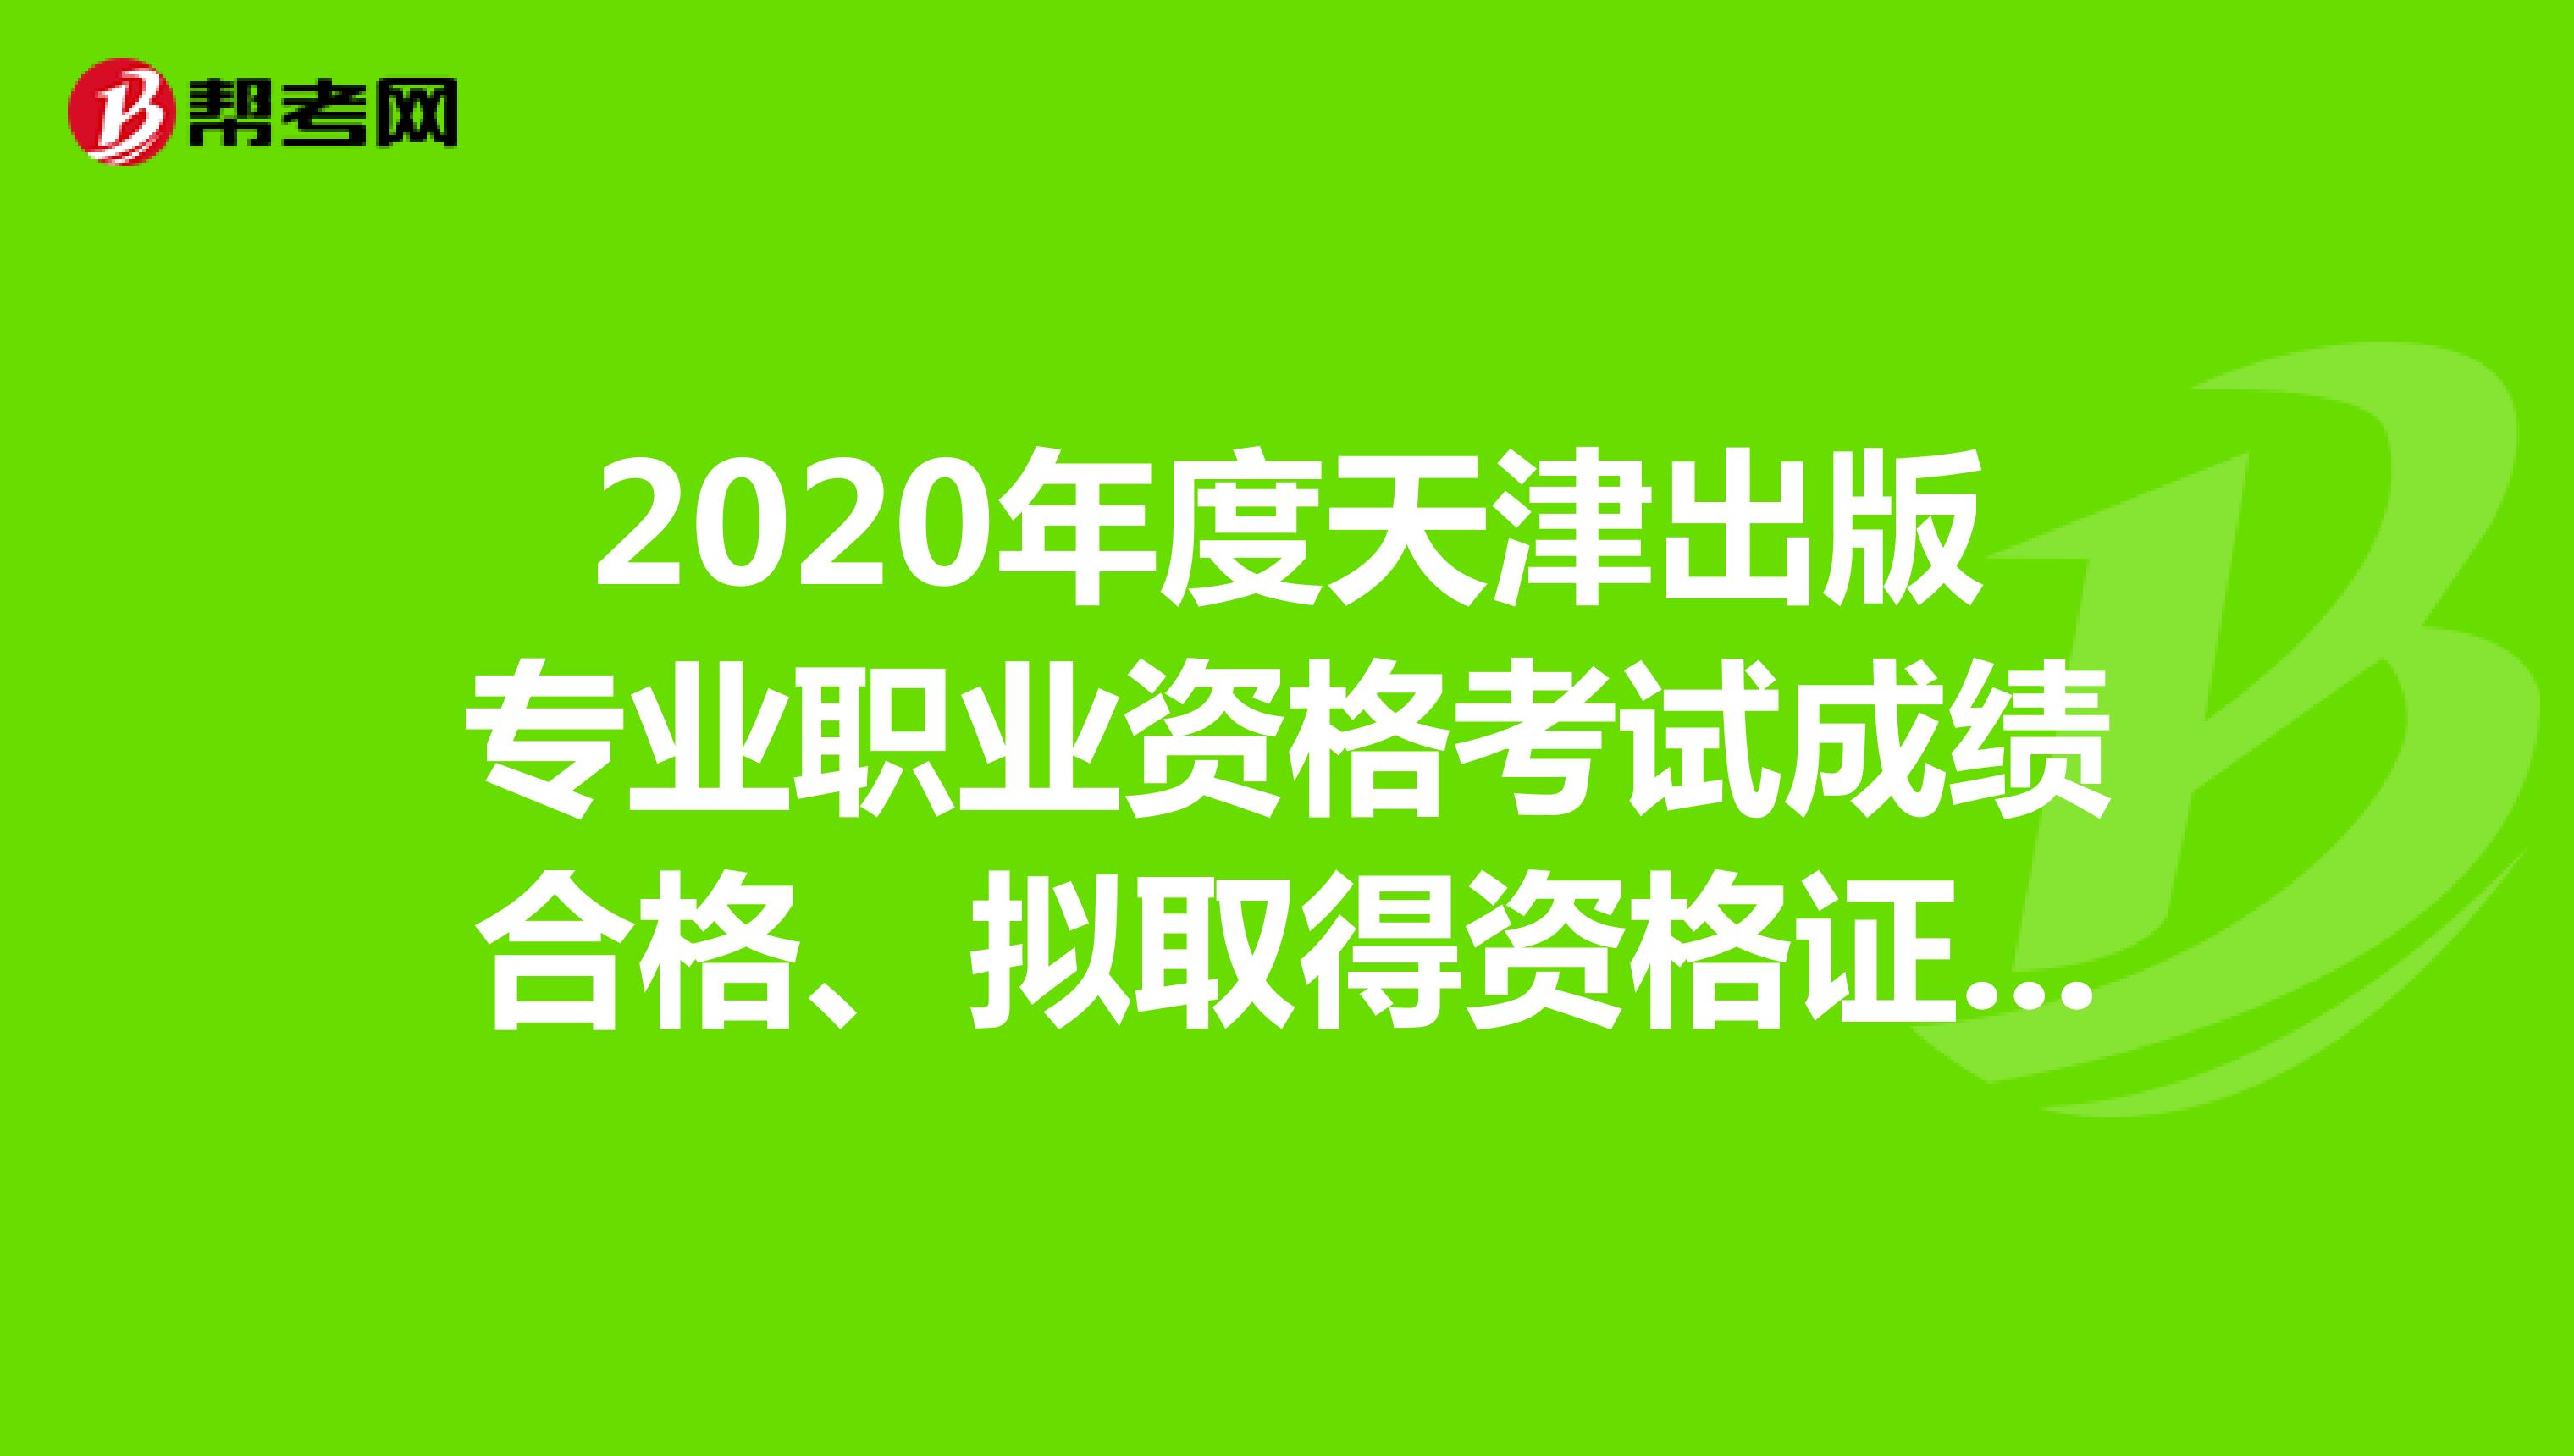 2020年度天津出版专业职业资格考试成绩合格、拟取得资格证书人员公示！